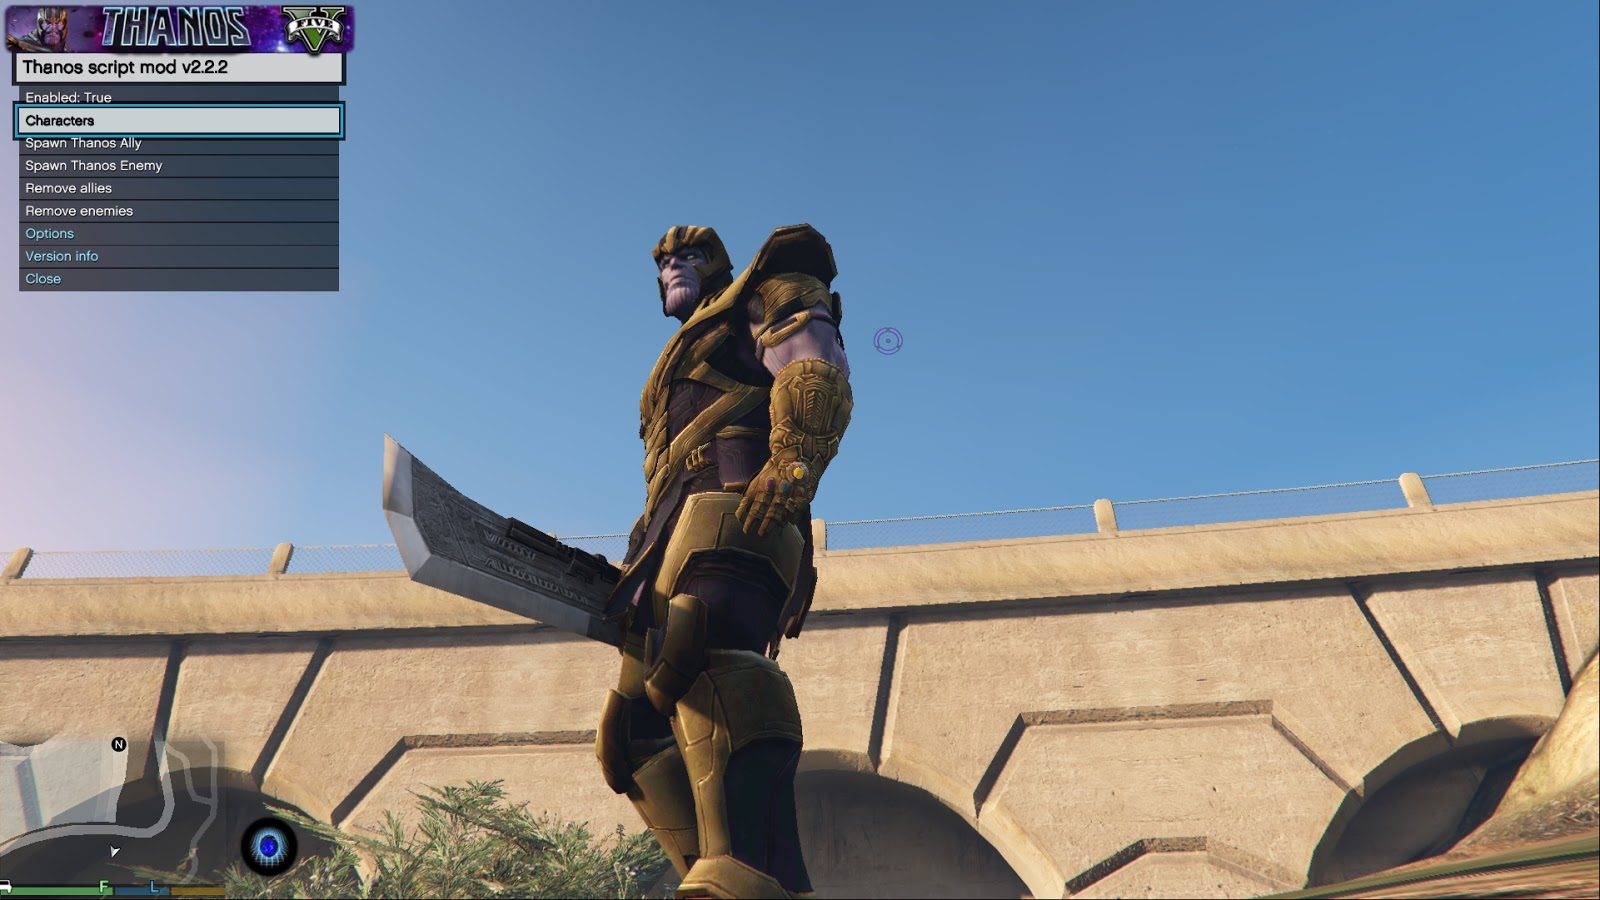 Grand Theft Auto 5 Marvel Мод Thanos Endgame теперь доступен для скачивания всем желающим